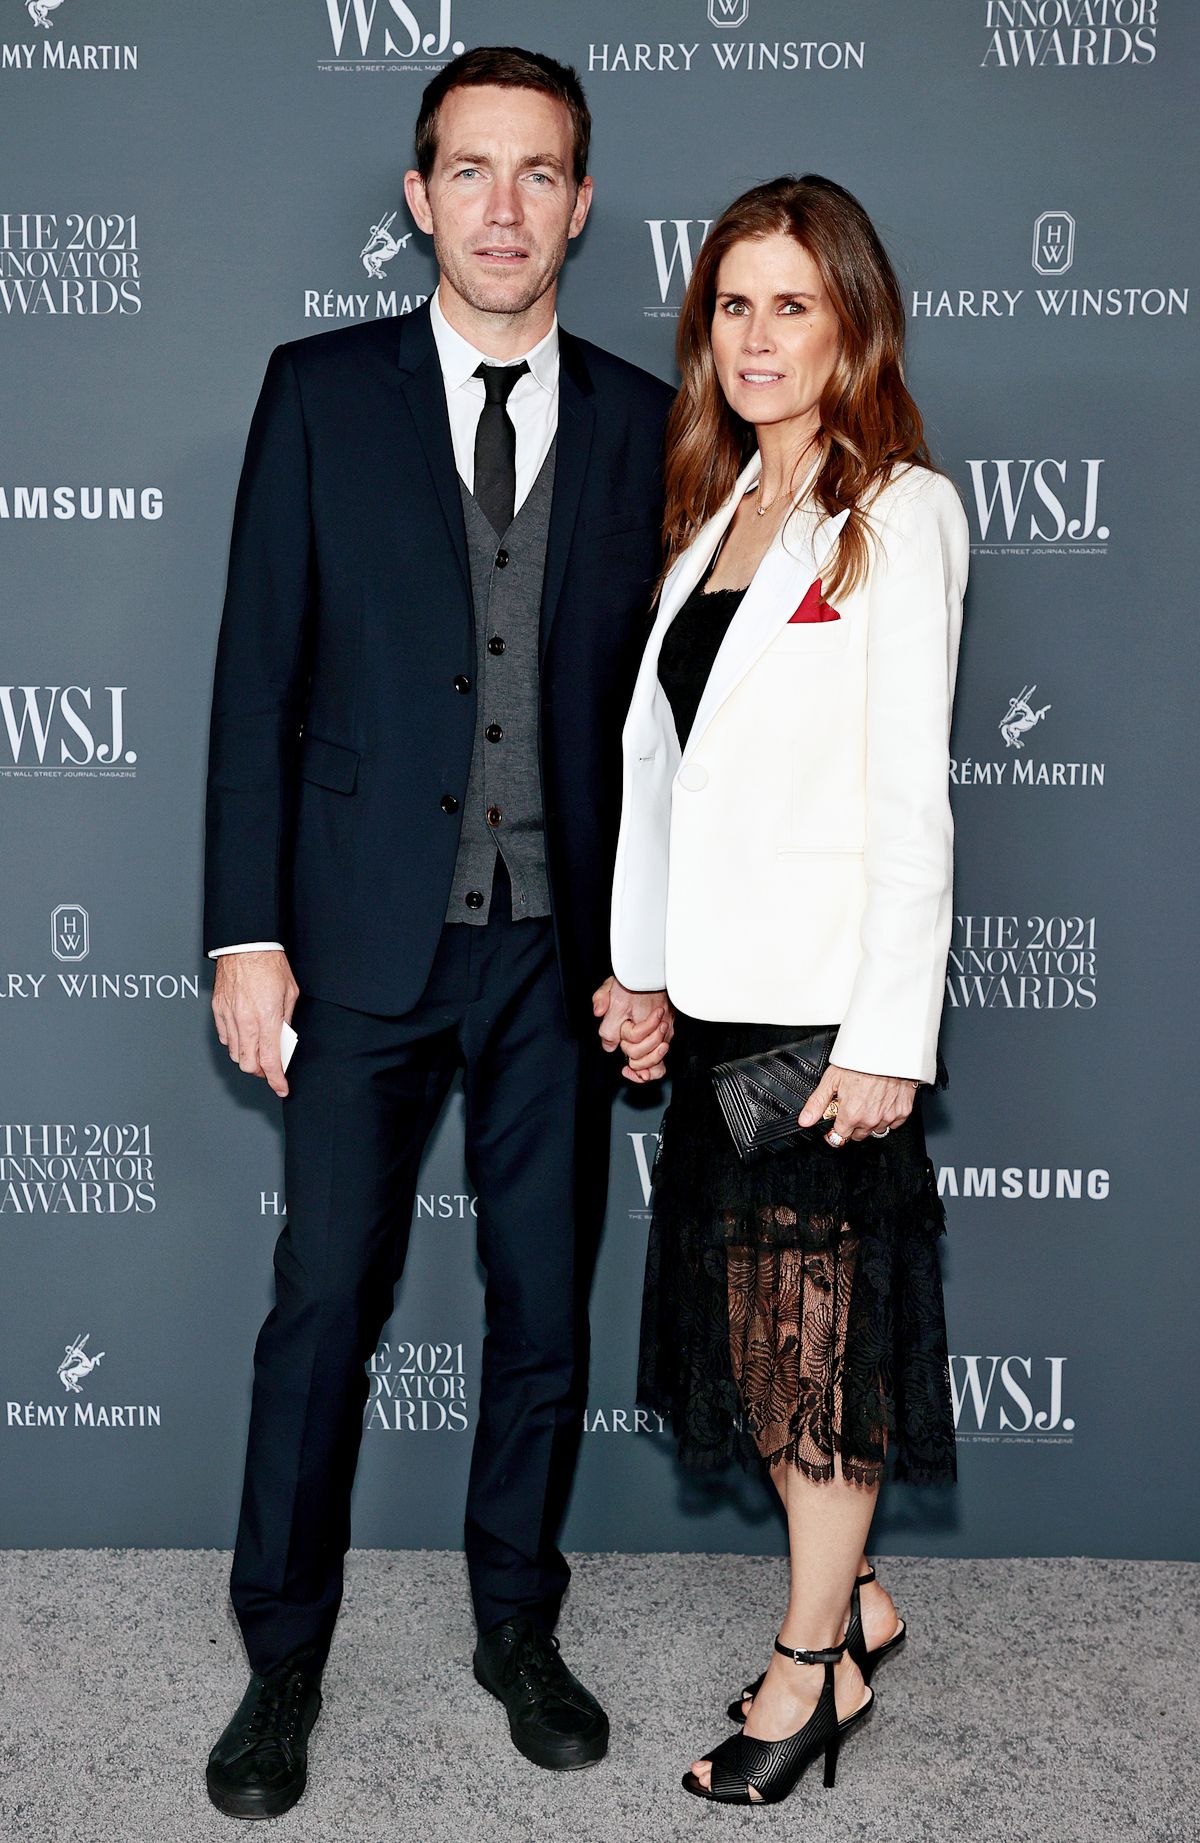 Дэвид Невилл, Гуччи Вестман на церемонии вручения премии журнала WSJ Innovator Awards 2021 в Нью-Йорке, 1 ноября 2021 г.